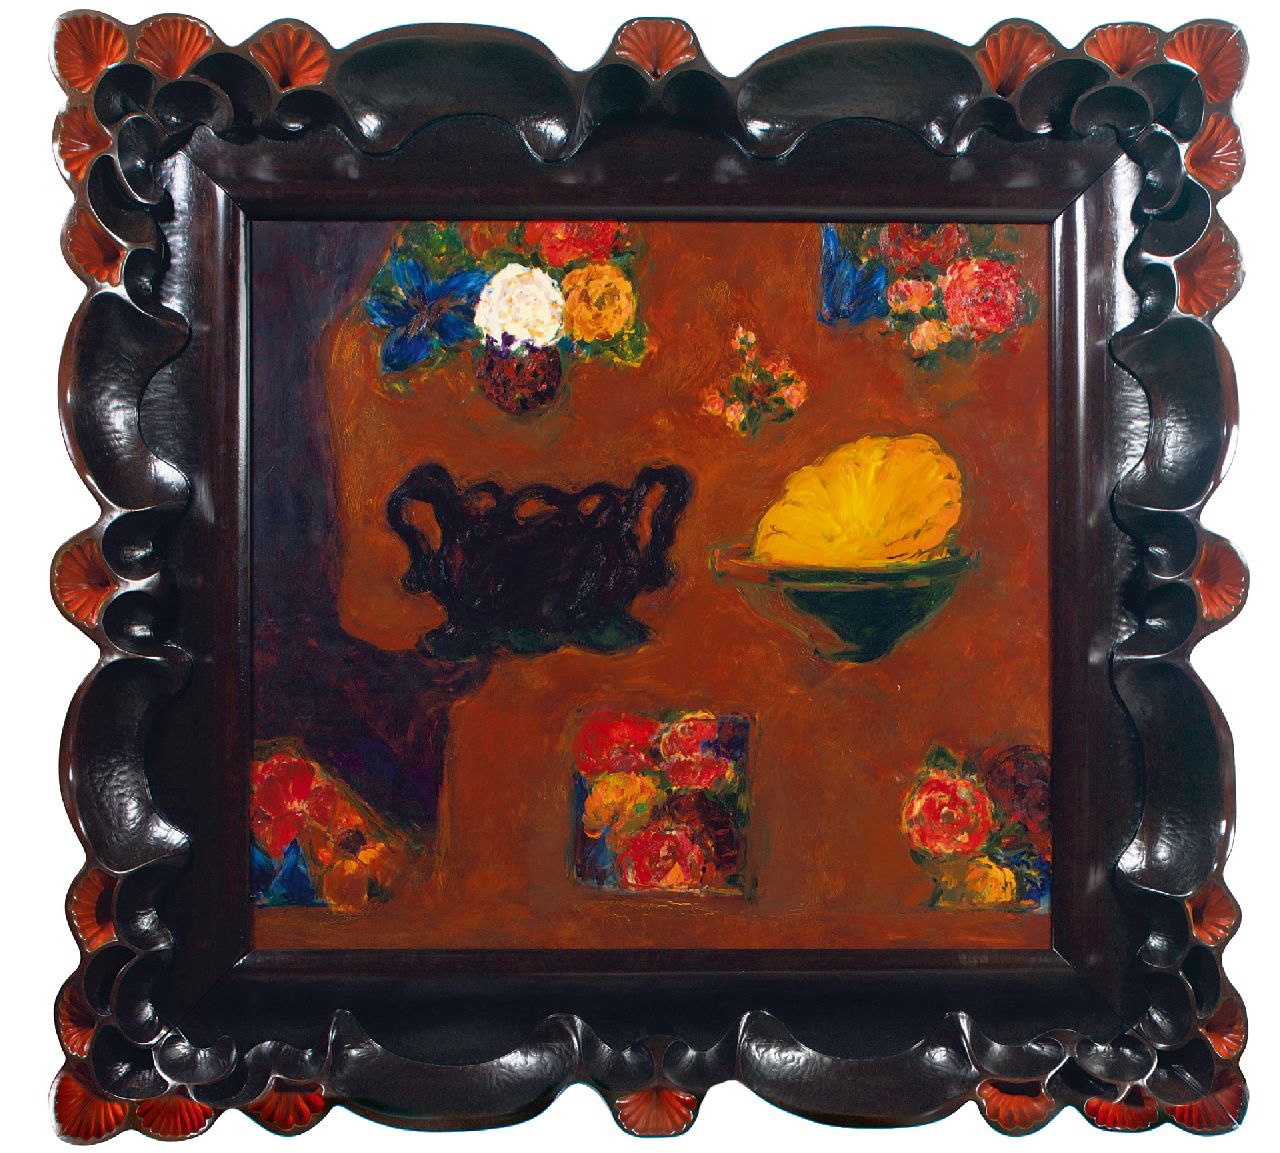 Hoek H. van | Hans van Hoek | Schilderijen te koop aangeboden | Bowl within a bowl, olieverf op doek 145,0 x 145,0 cm, gesigneerd verso en verso gedateerd '95-97